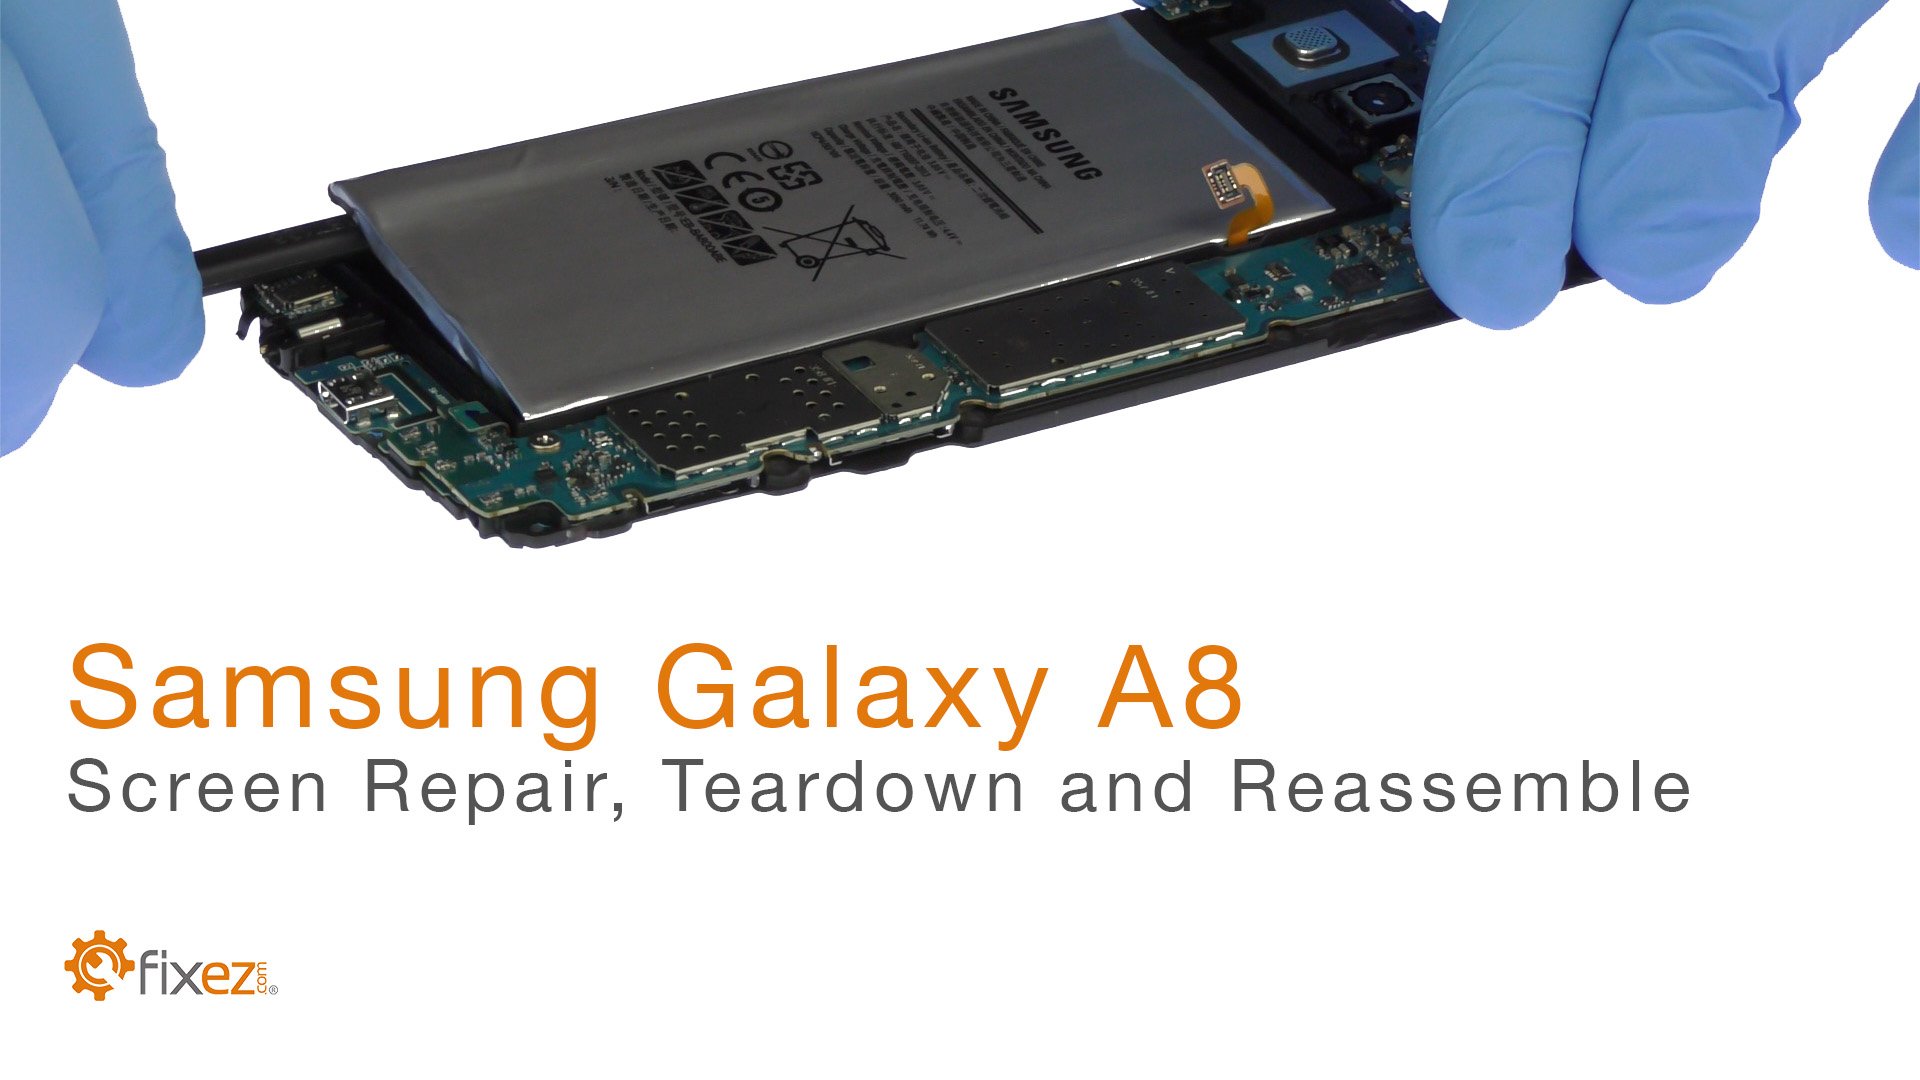 Samsung Galaxy A8 Screen Repair, Teardown and Reassemble